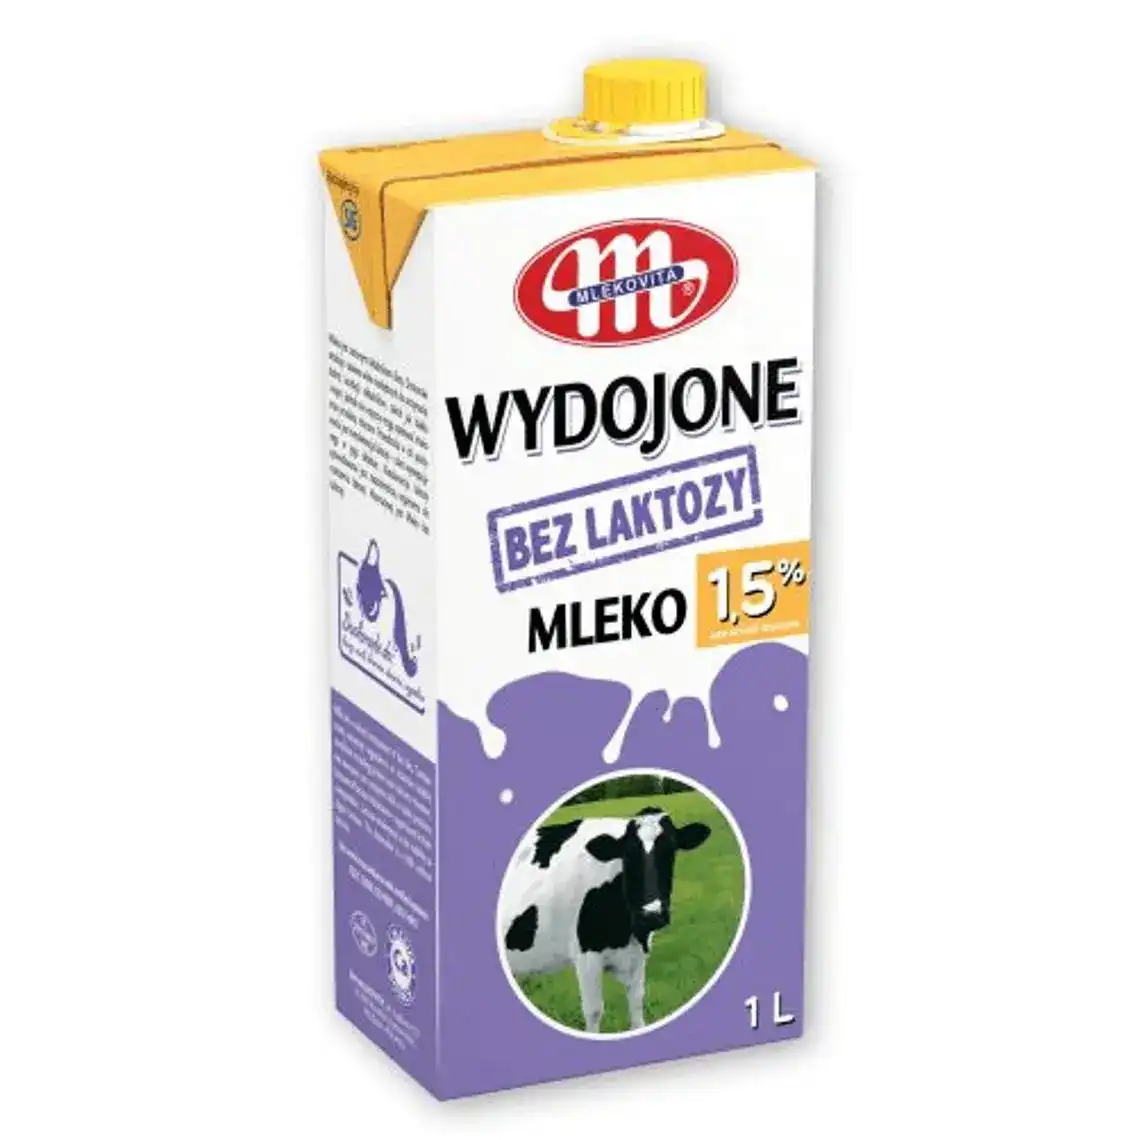 Молоко Mlekovita 1.5% ультрапастеризоване без лактози 1 л